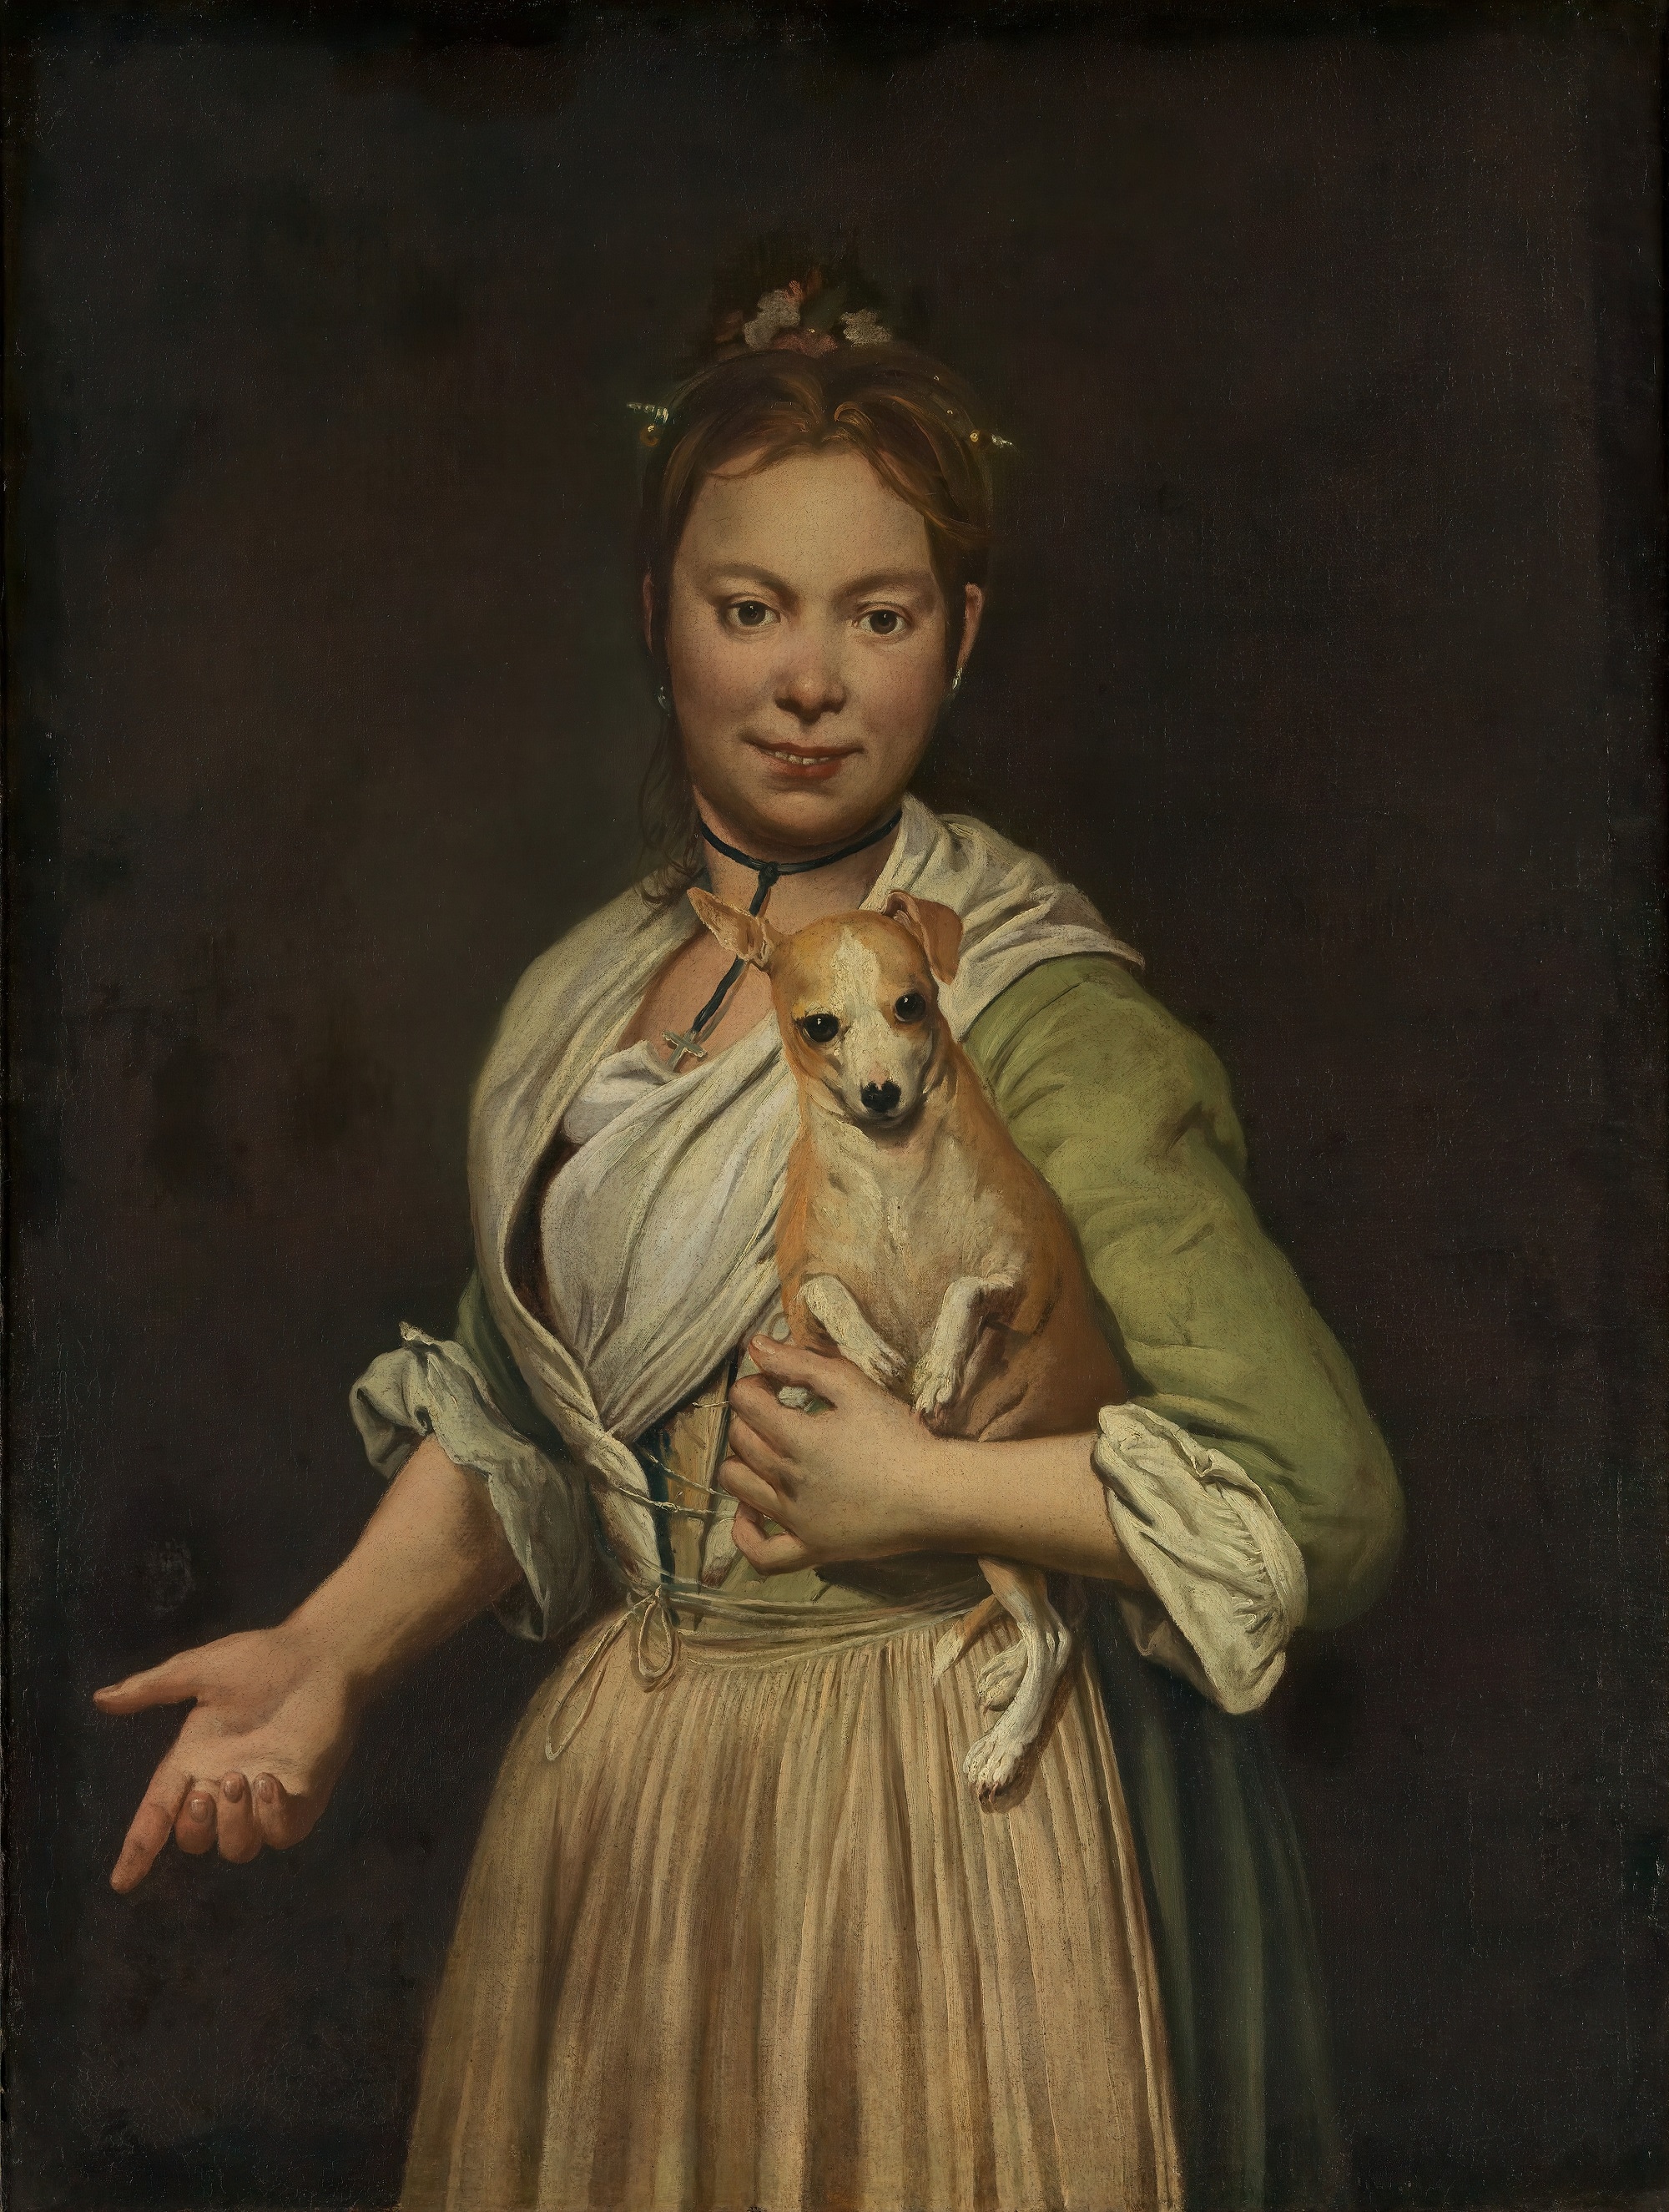 Giacomo Ceruti, Ritratto di giovane donna con cane, 1740-’50, olio su tela, 96.5× 72.3cm., Metropolitan Museum of Art, New York